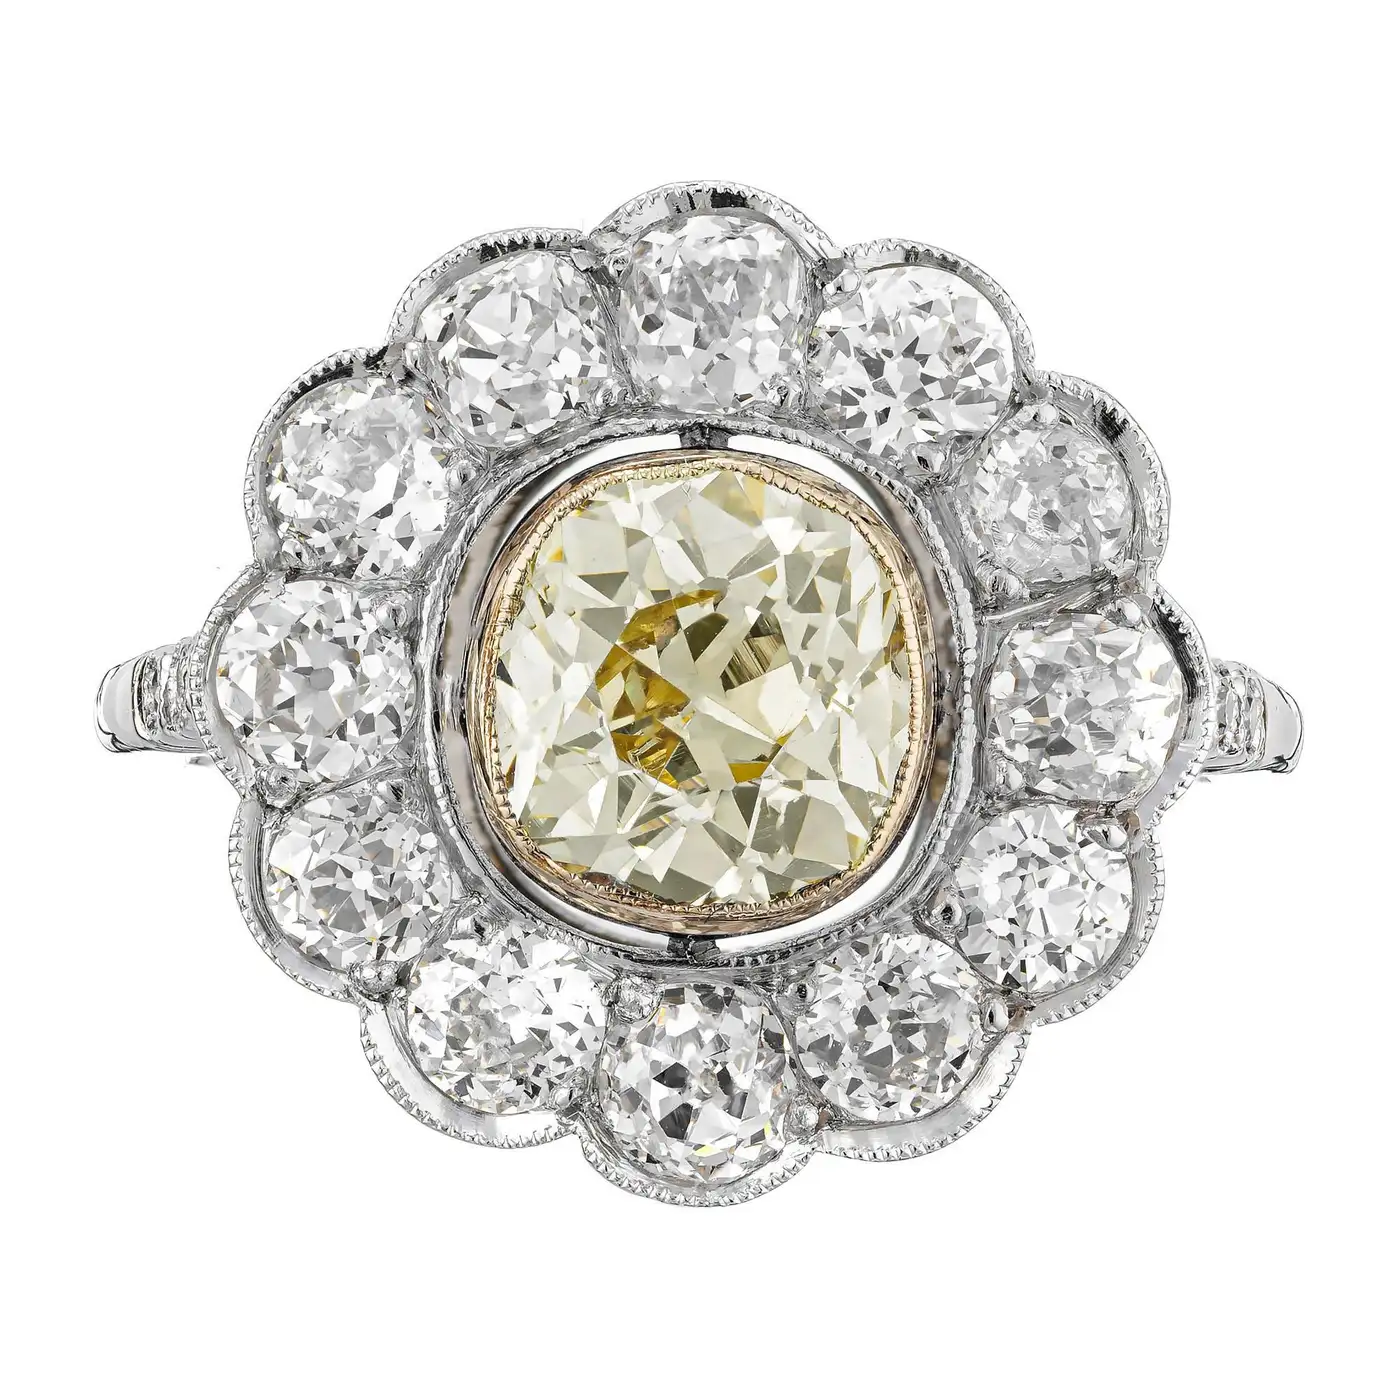 1.39-Carat-Natural-Yellow-White-Diamond-Platinum-Engagement-Ring-GIA-Certified-5.webp